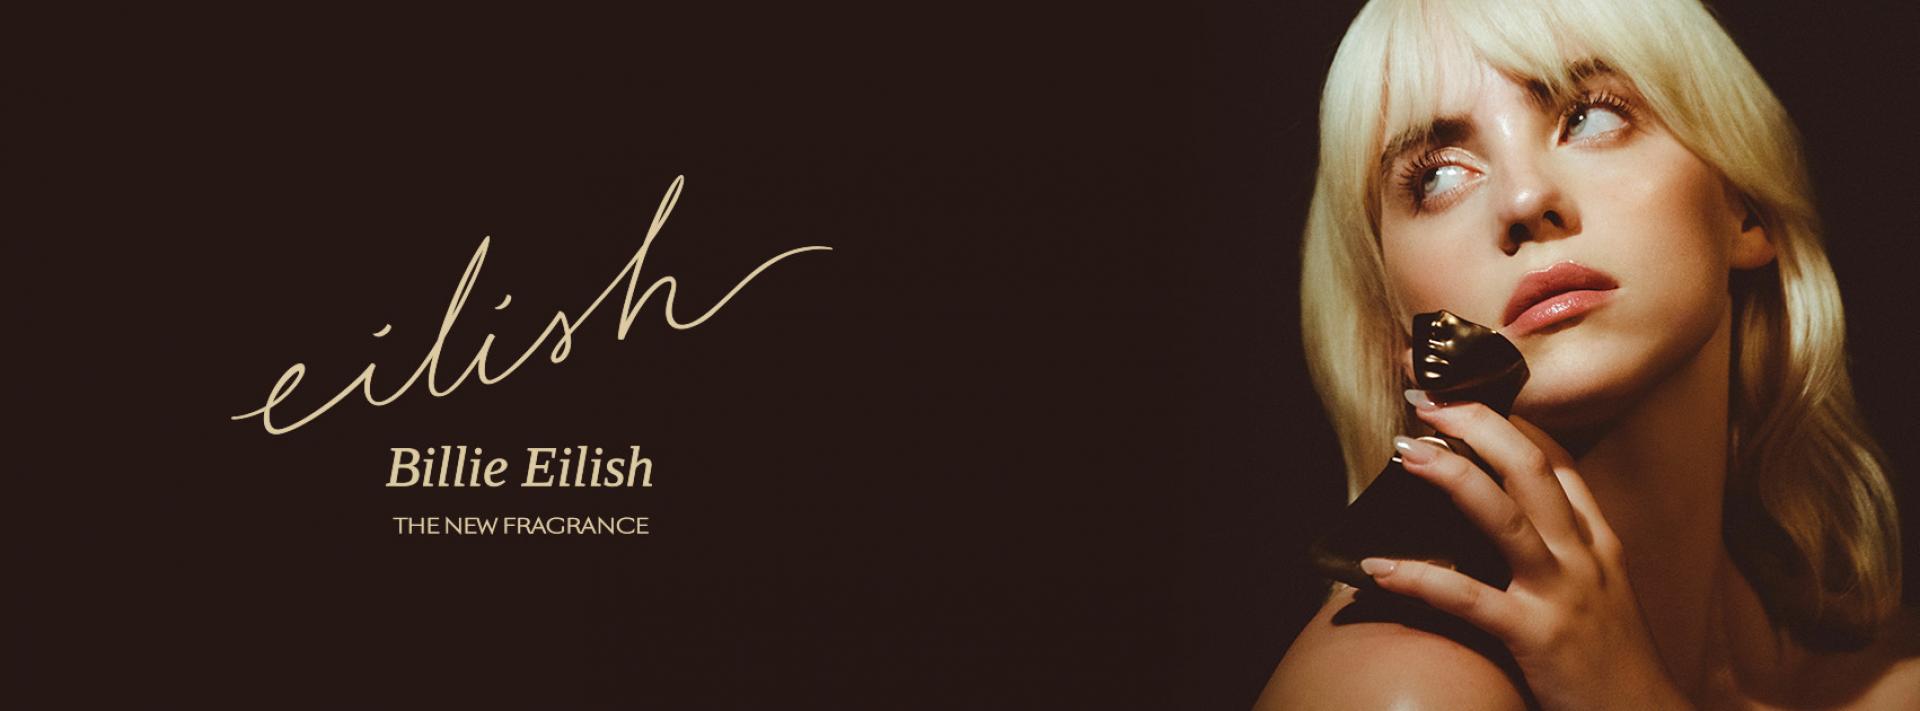 Billie Eilish wprowadza na rynek pierwsze perfumy pod swoją marką